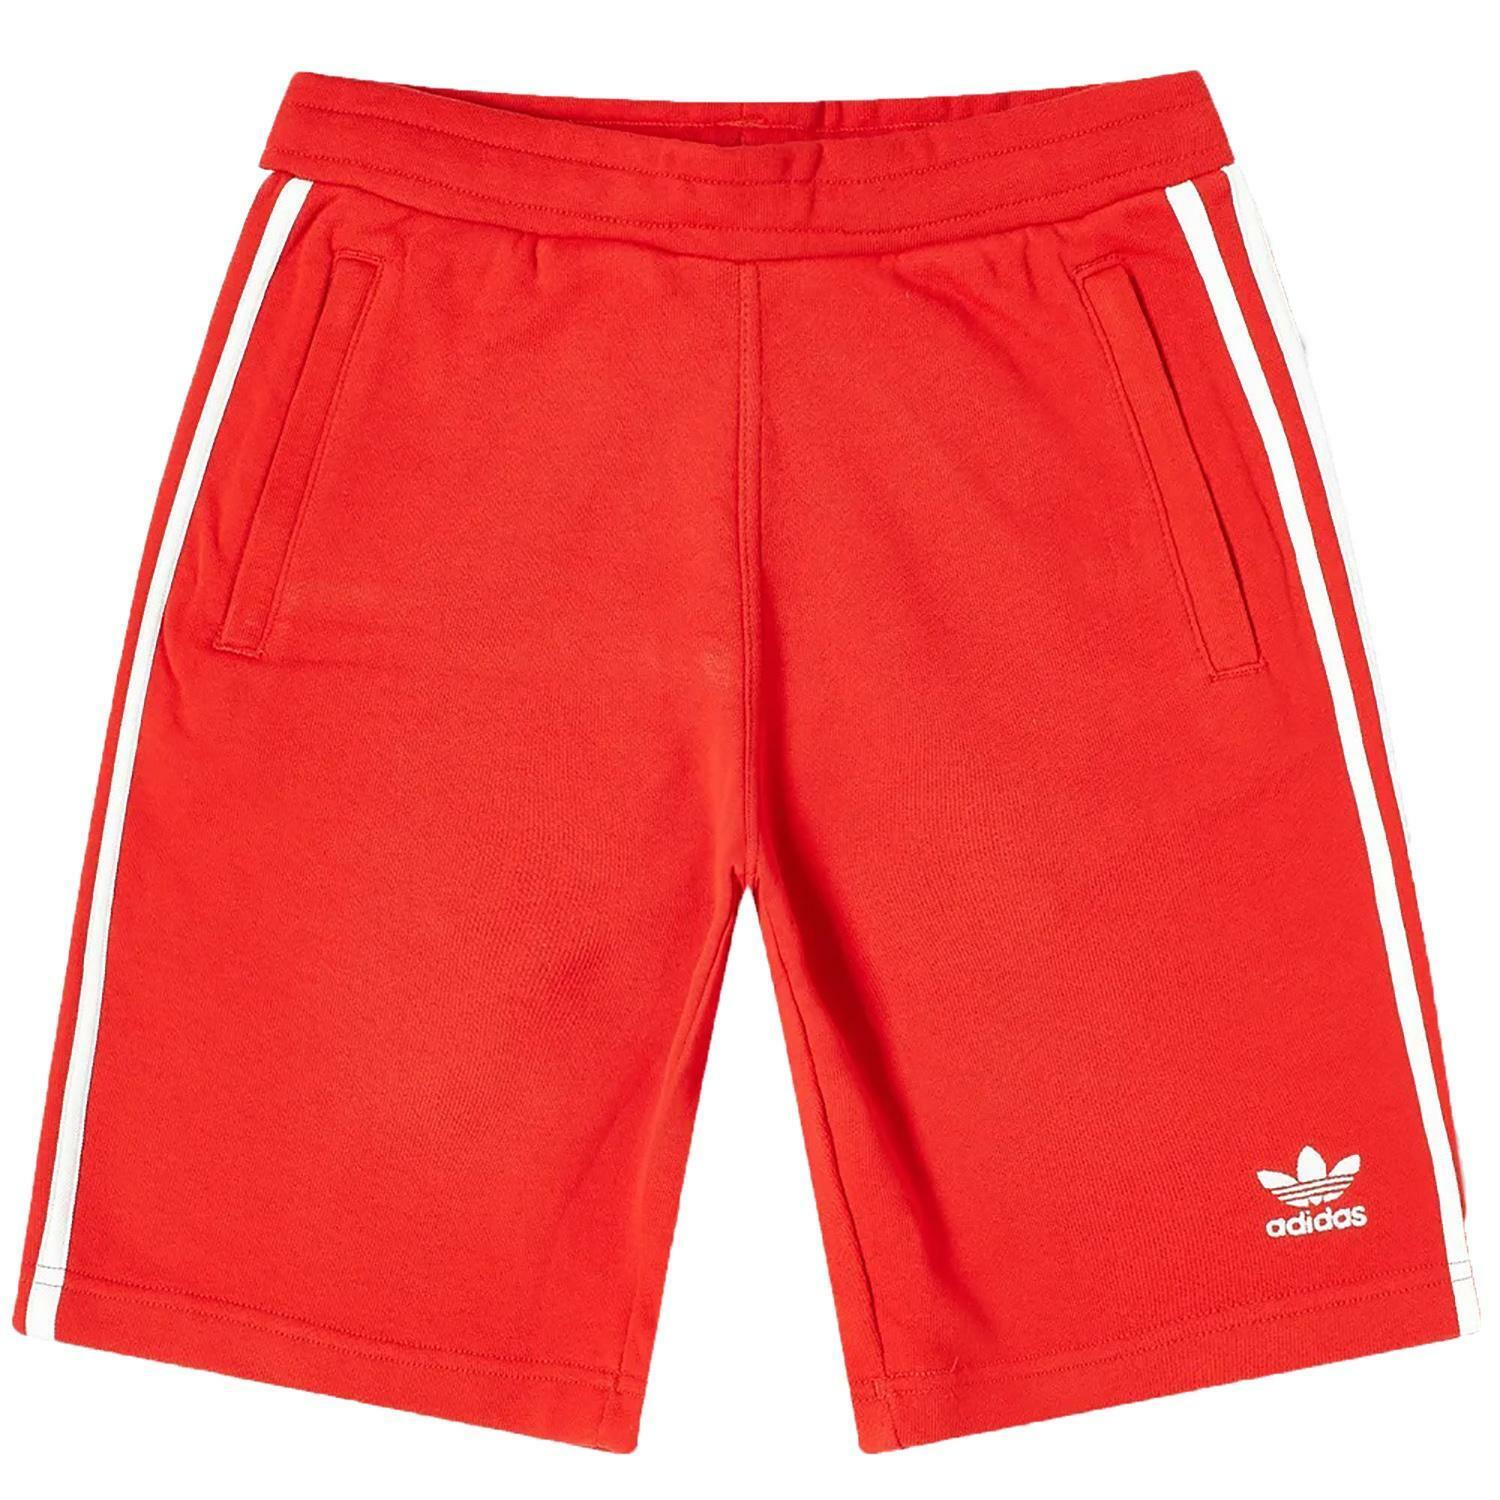 Adidas 3-stripe pantaloncini uomo rossi gd9967